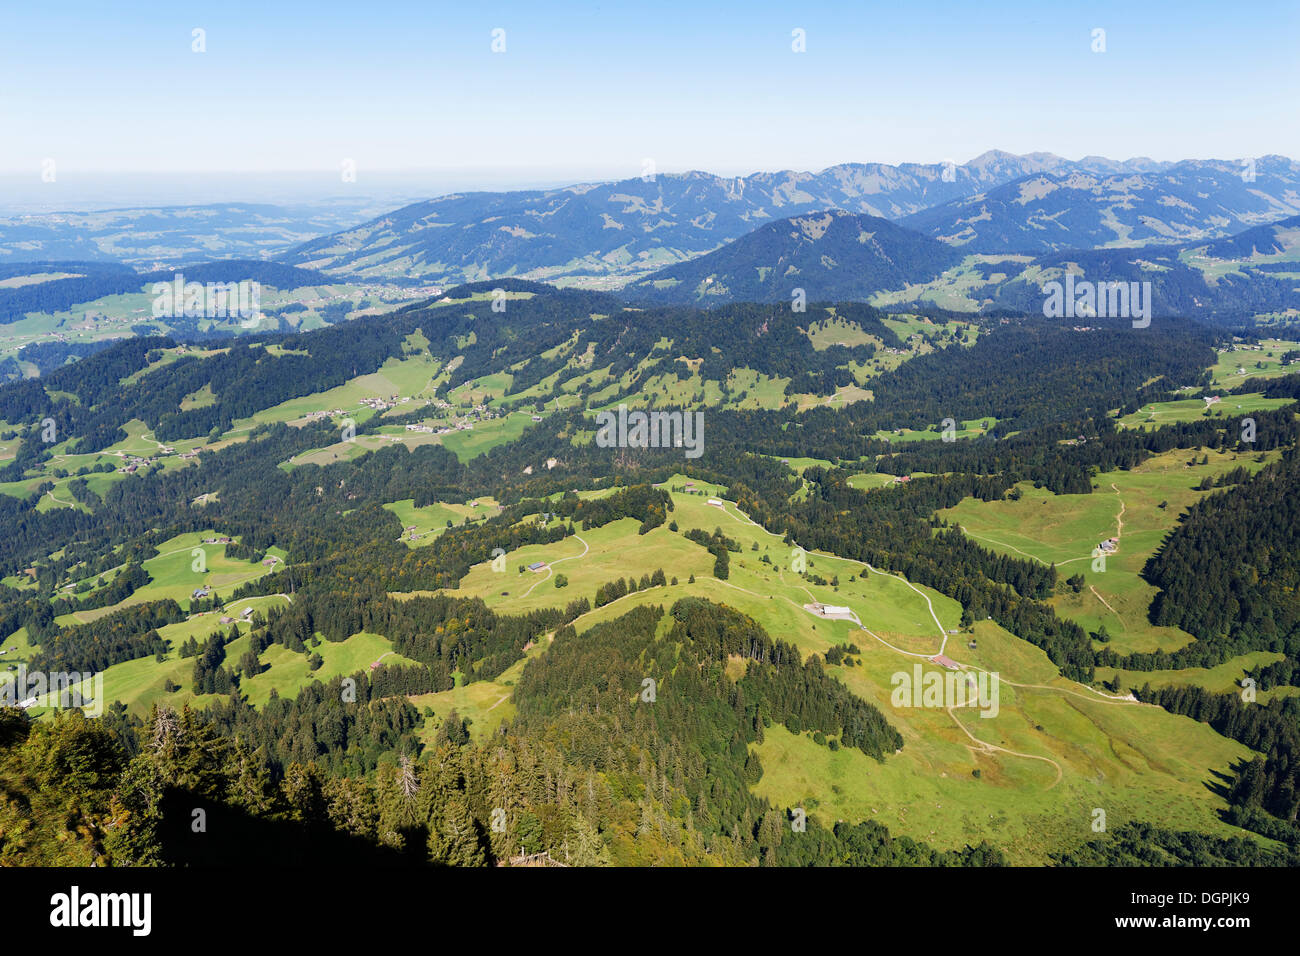 View from Mount Vordere Niedere towards the north, Berg Niedere, Andelsbuch, Bregenzerwald, Bregenzer Wald, Vorarlberg, Austria Stock Photo